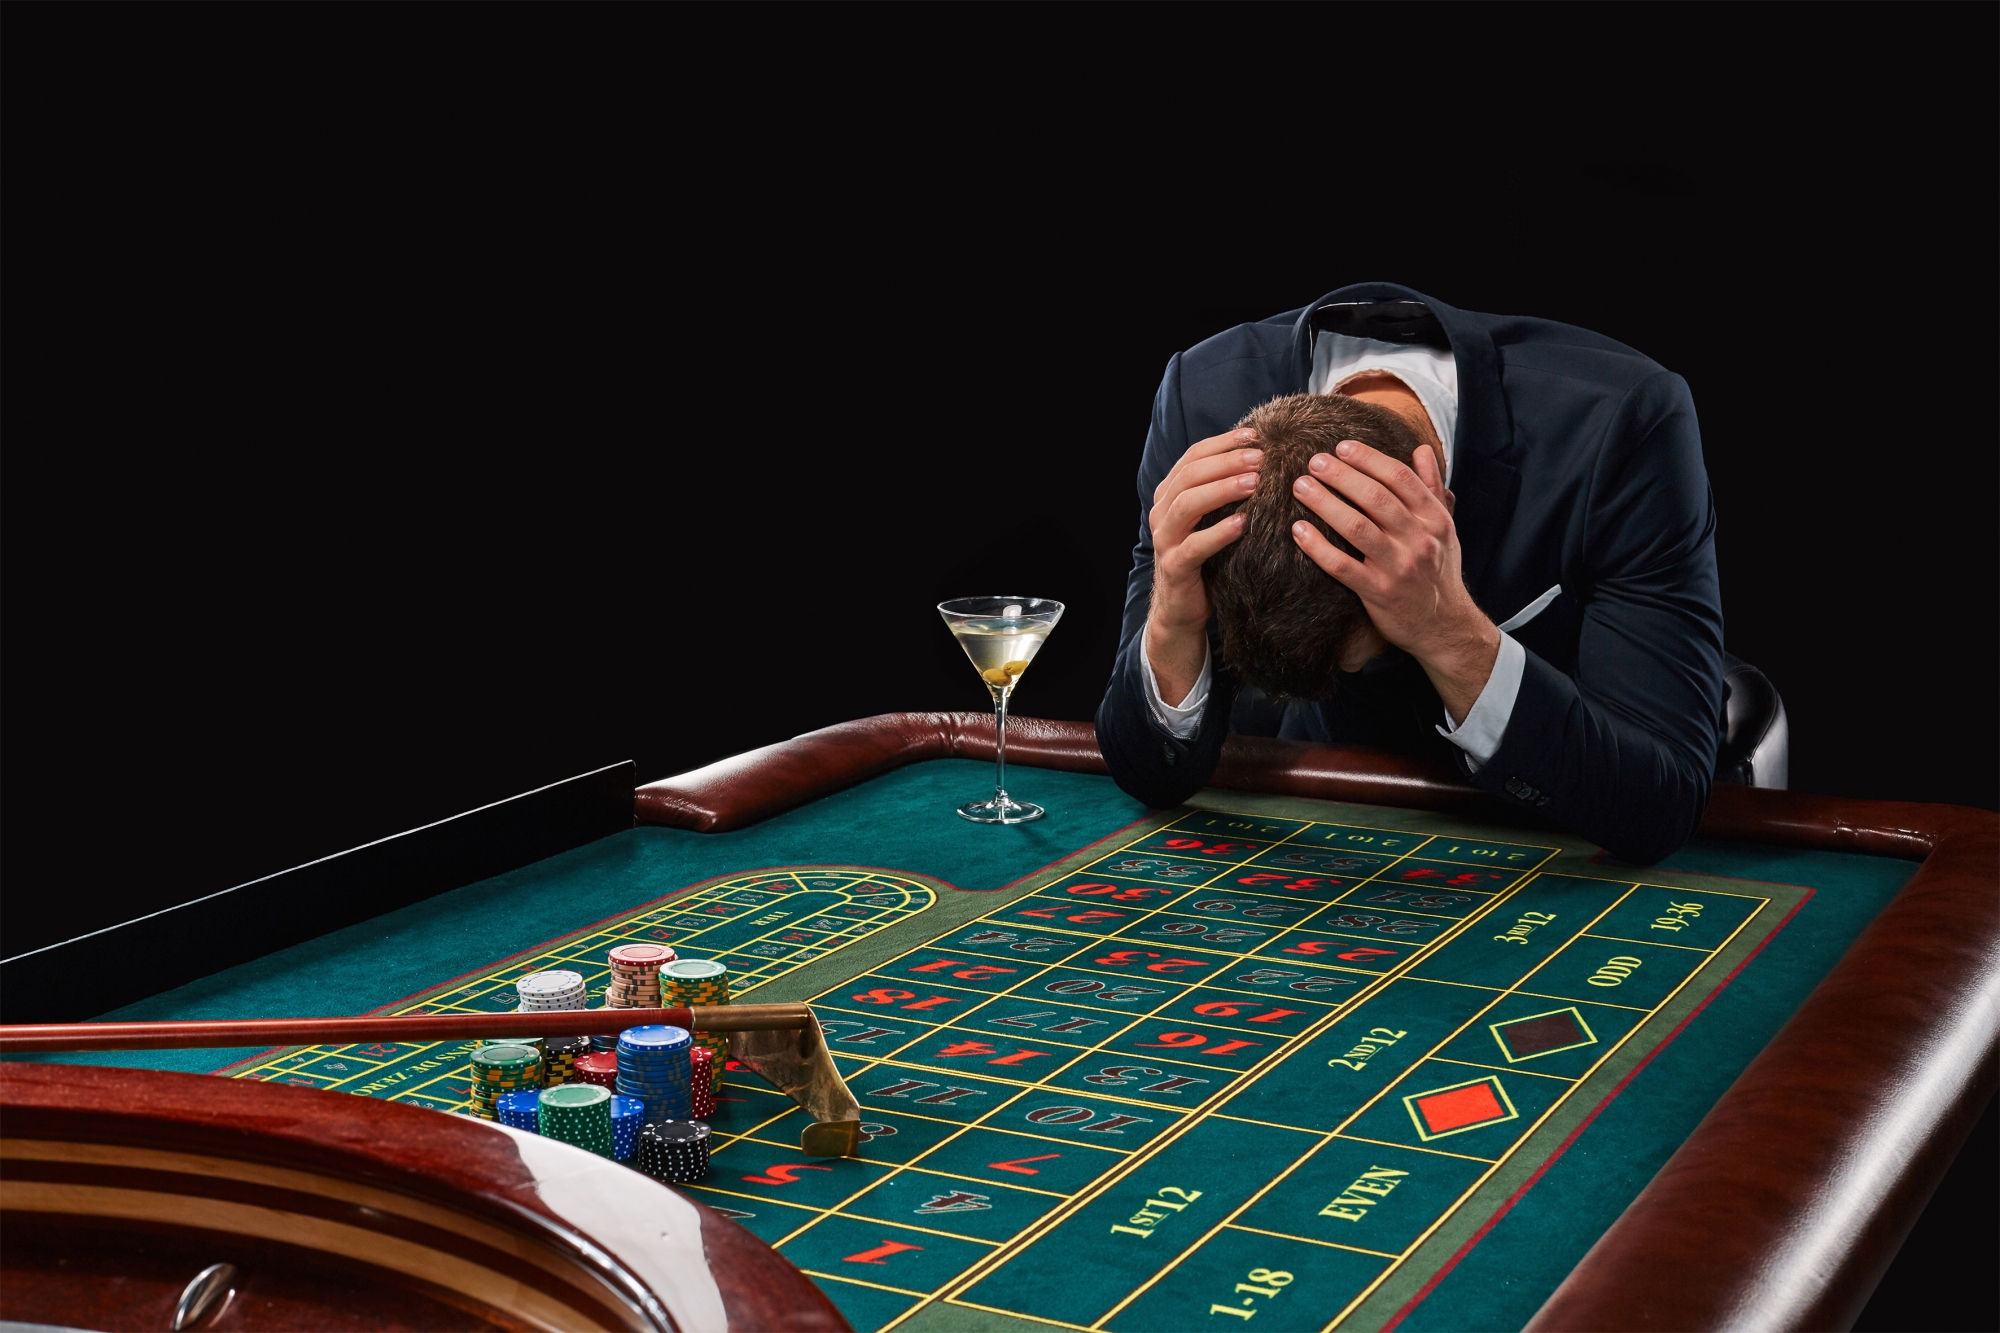 Kevin a sombré dans les casinos. Il a joué aux tables, mais ce sont les machines qui l’ont plongé dans le gouffre financier.